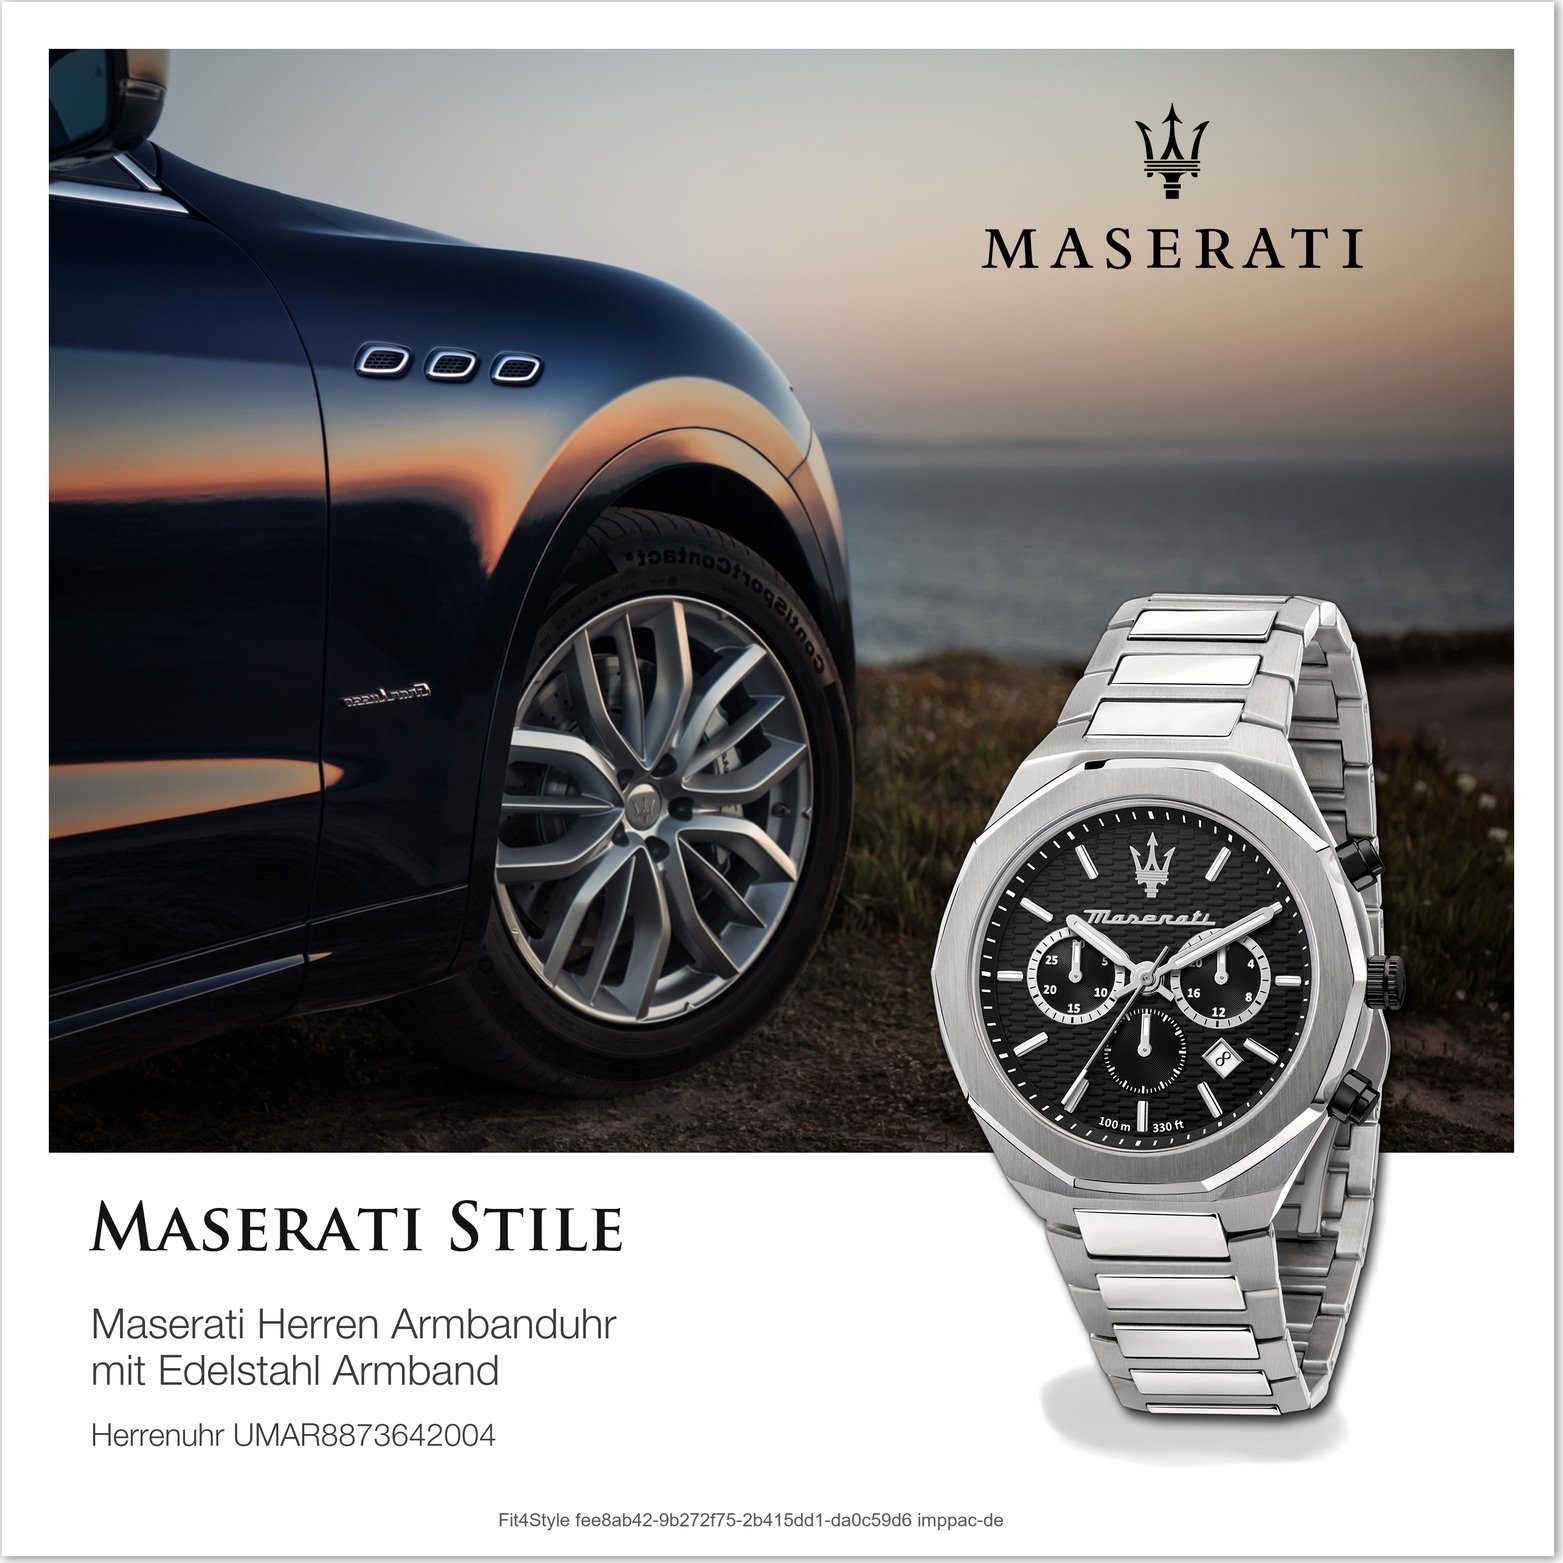 schwarz (ca. Edelstahlarmband, Herrenuhr Maserati Edelstahl Gehäuse, Chronograph groß MASERATI 45mm) Armband-Uhr, rundes